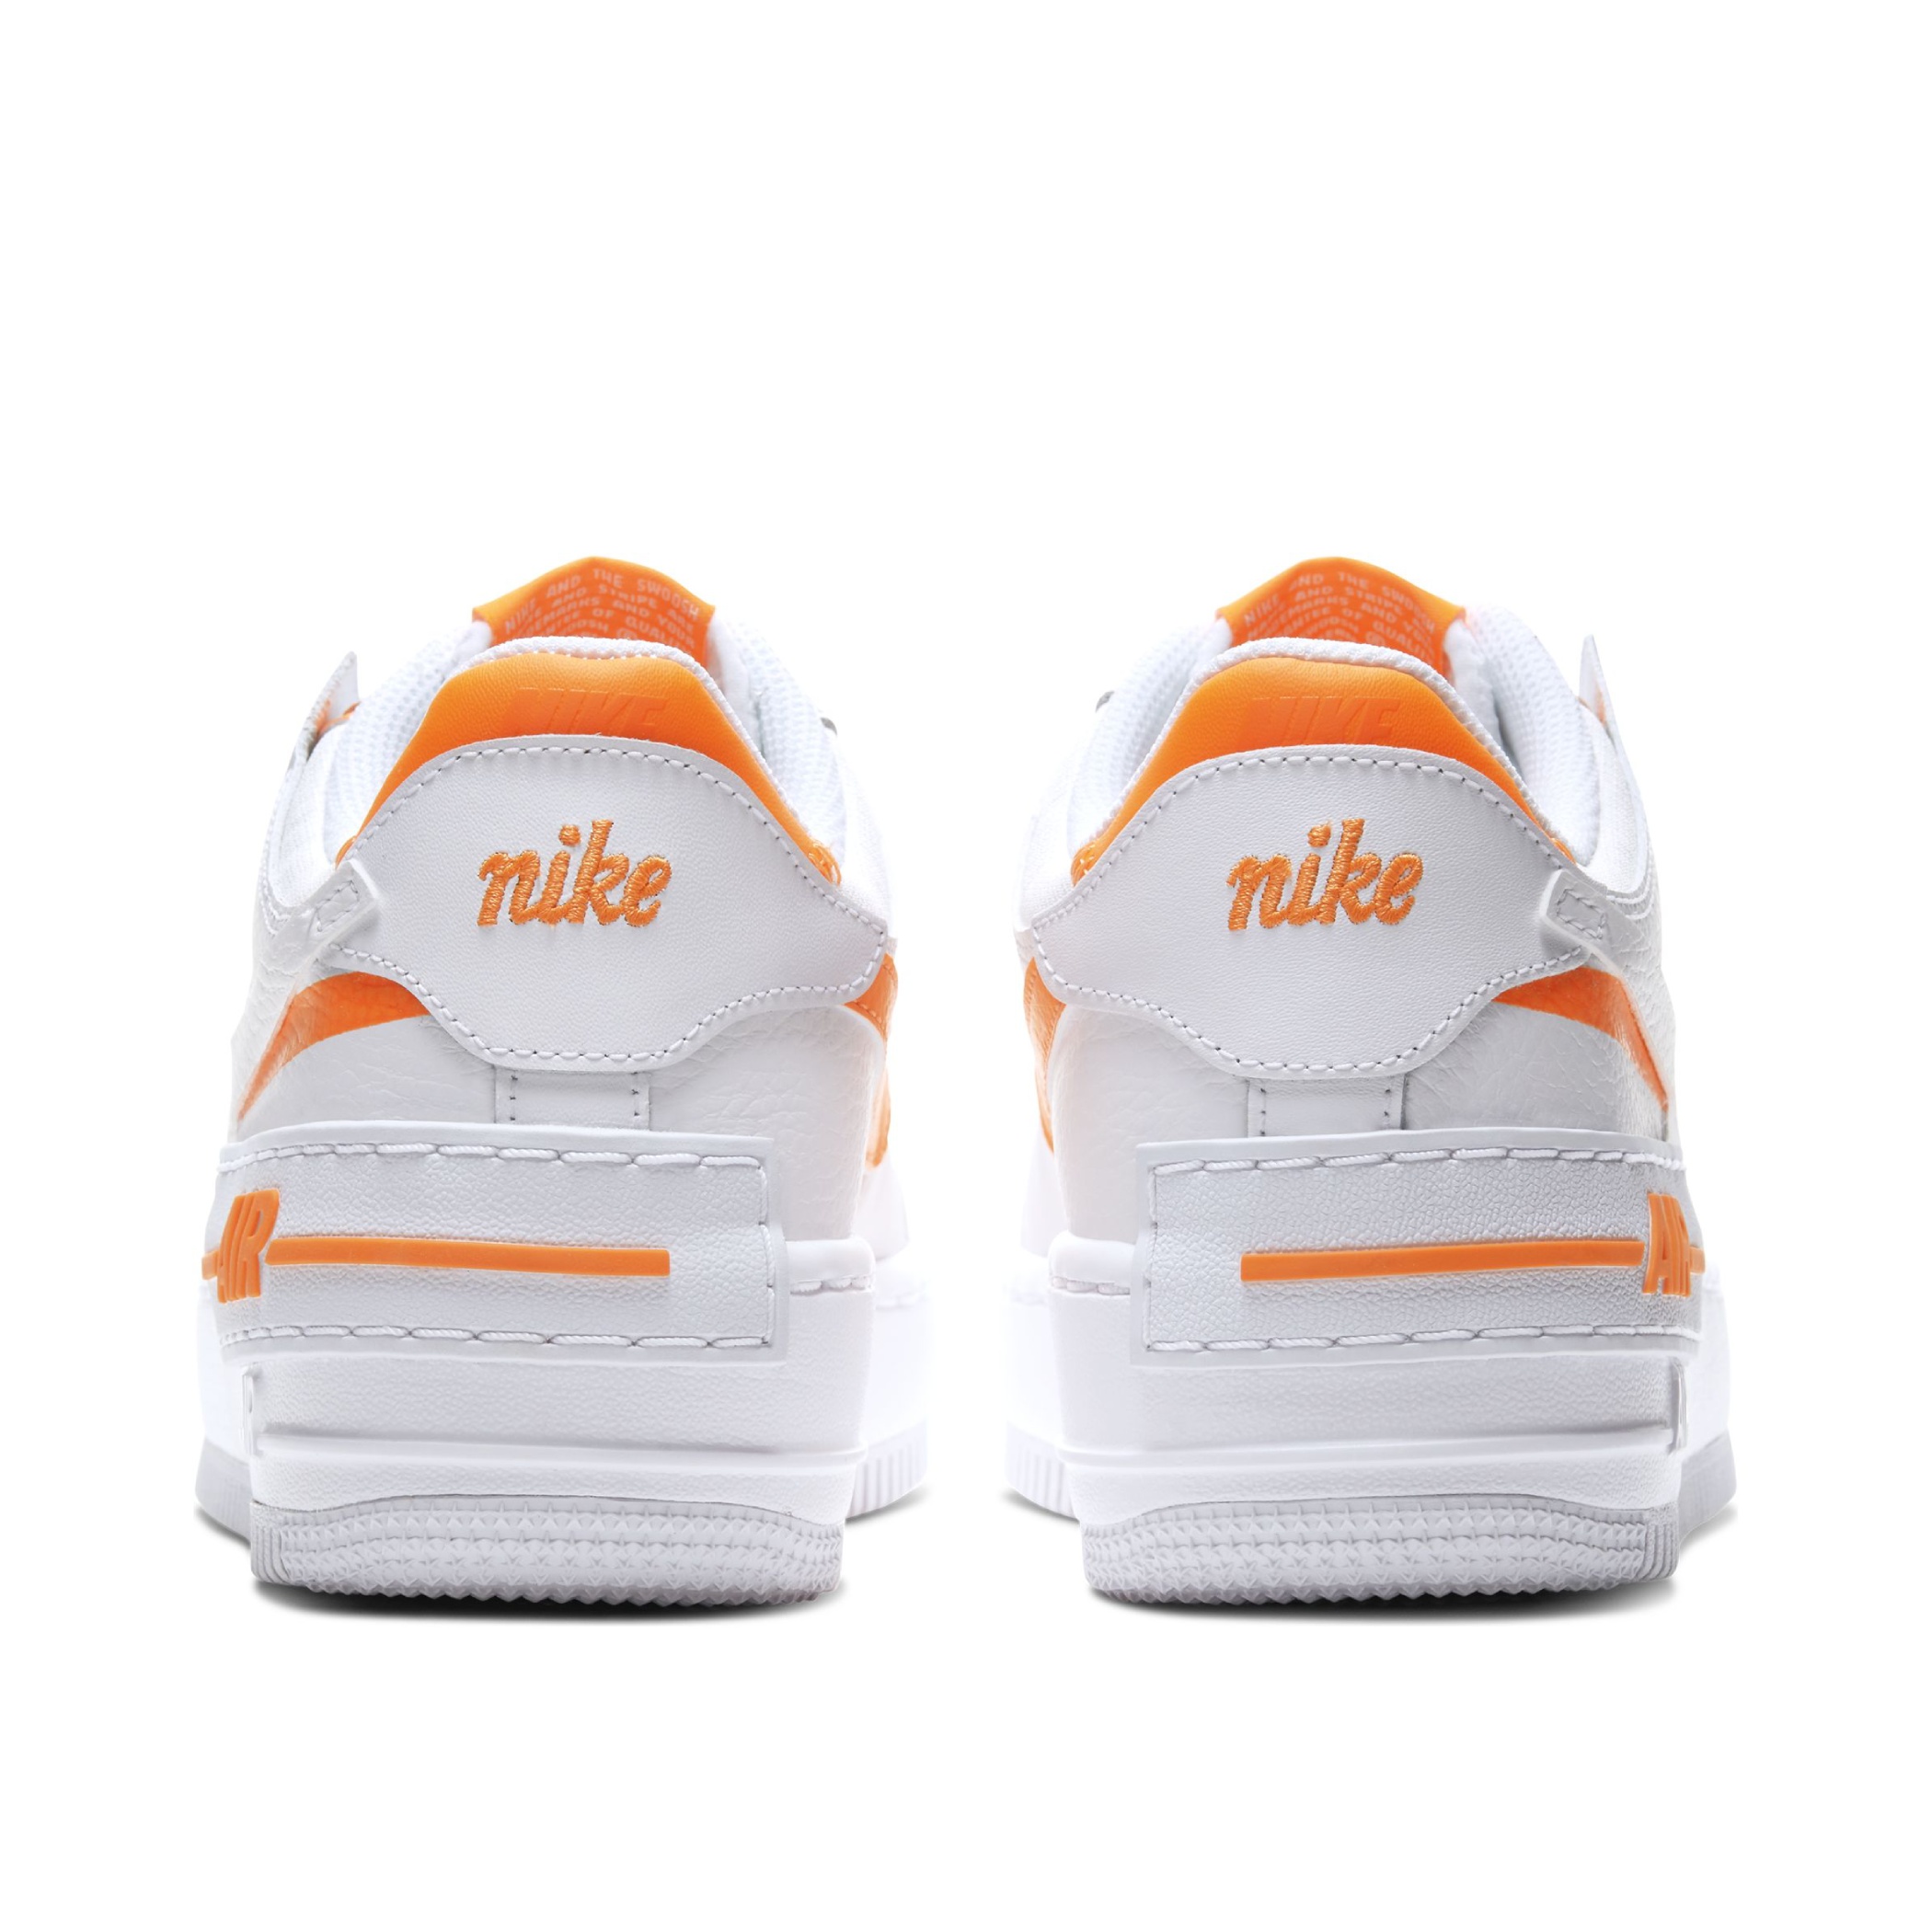 nike air force white and orange